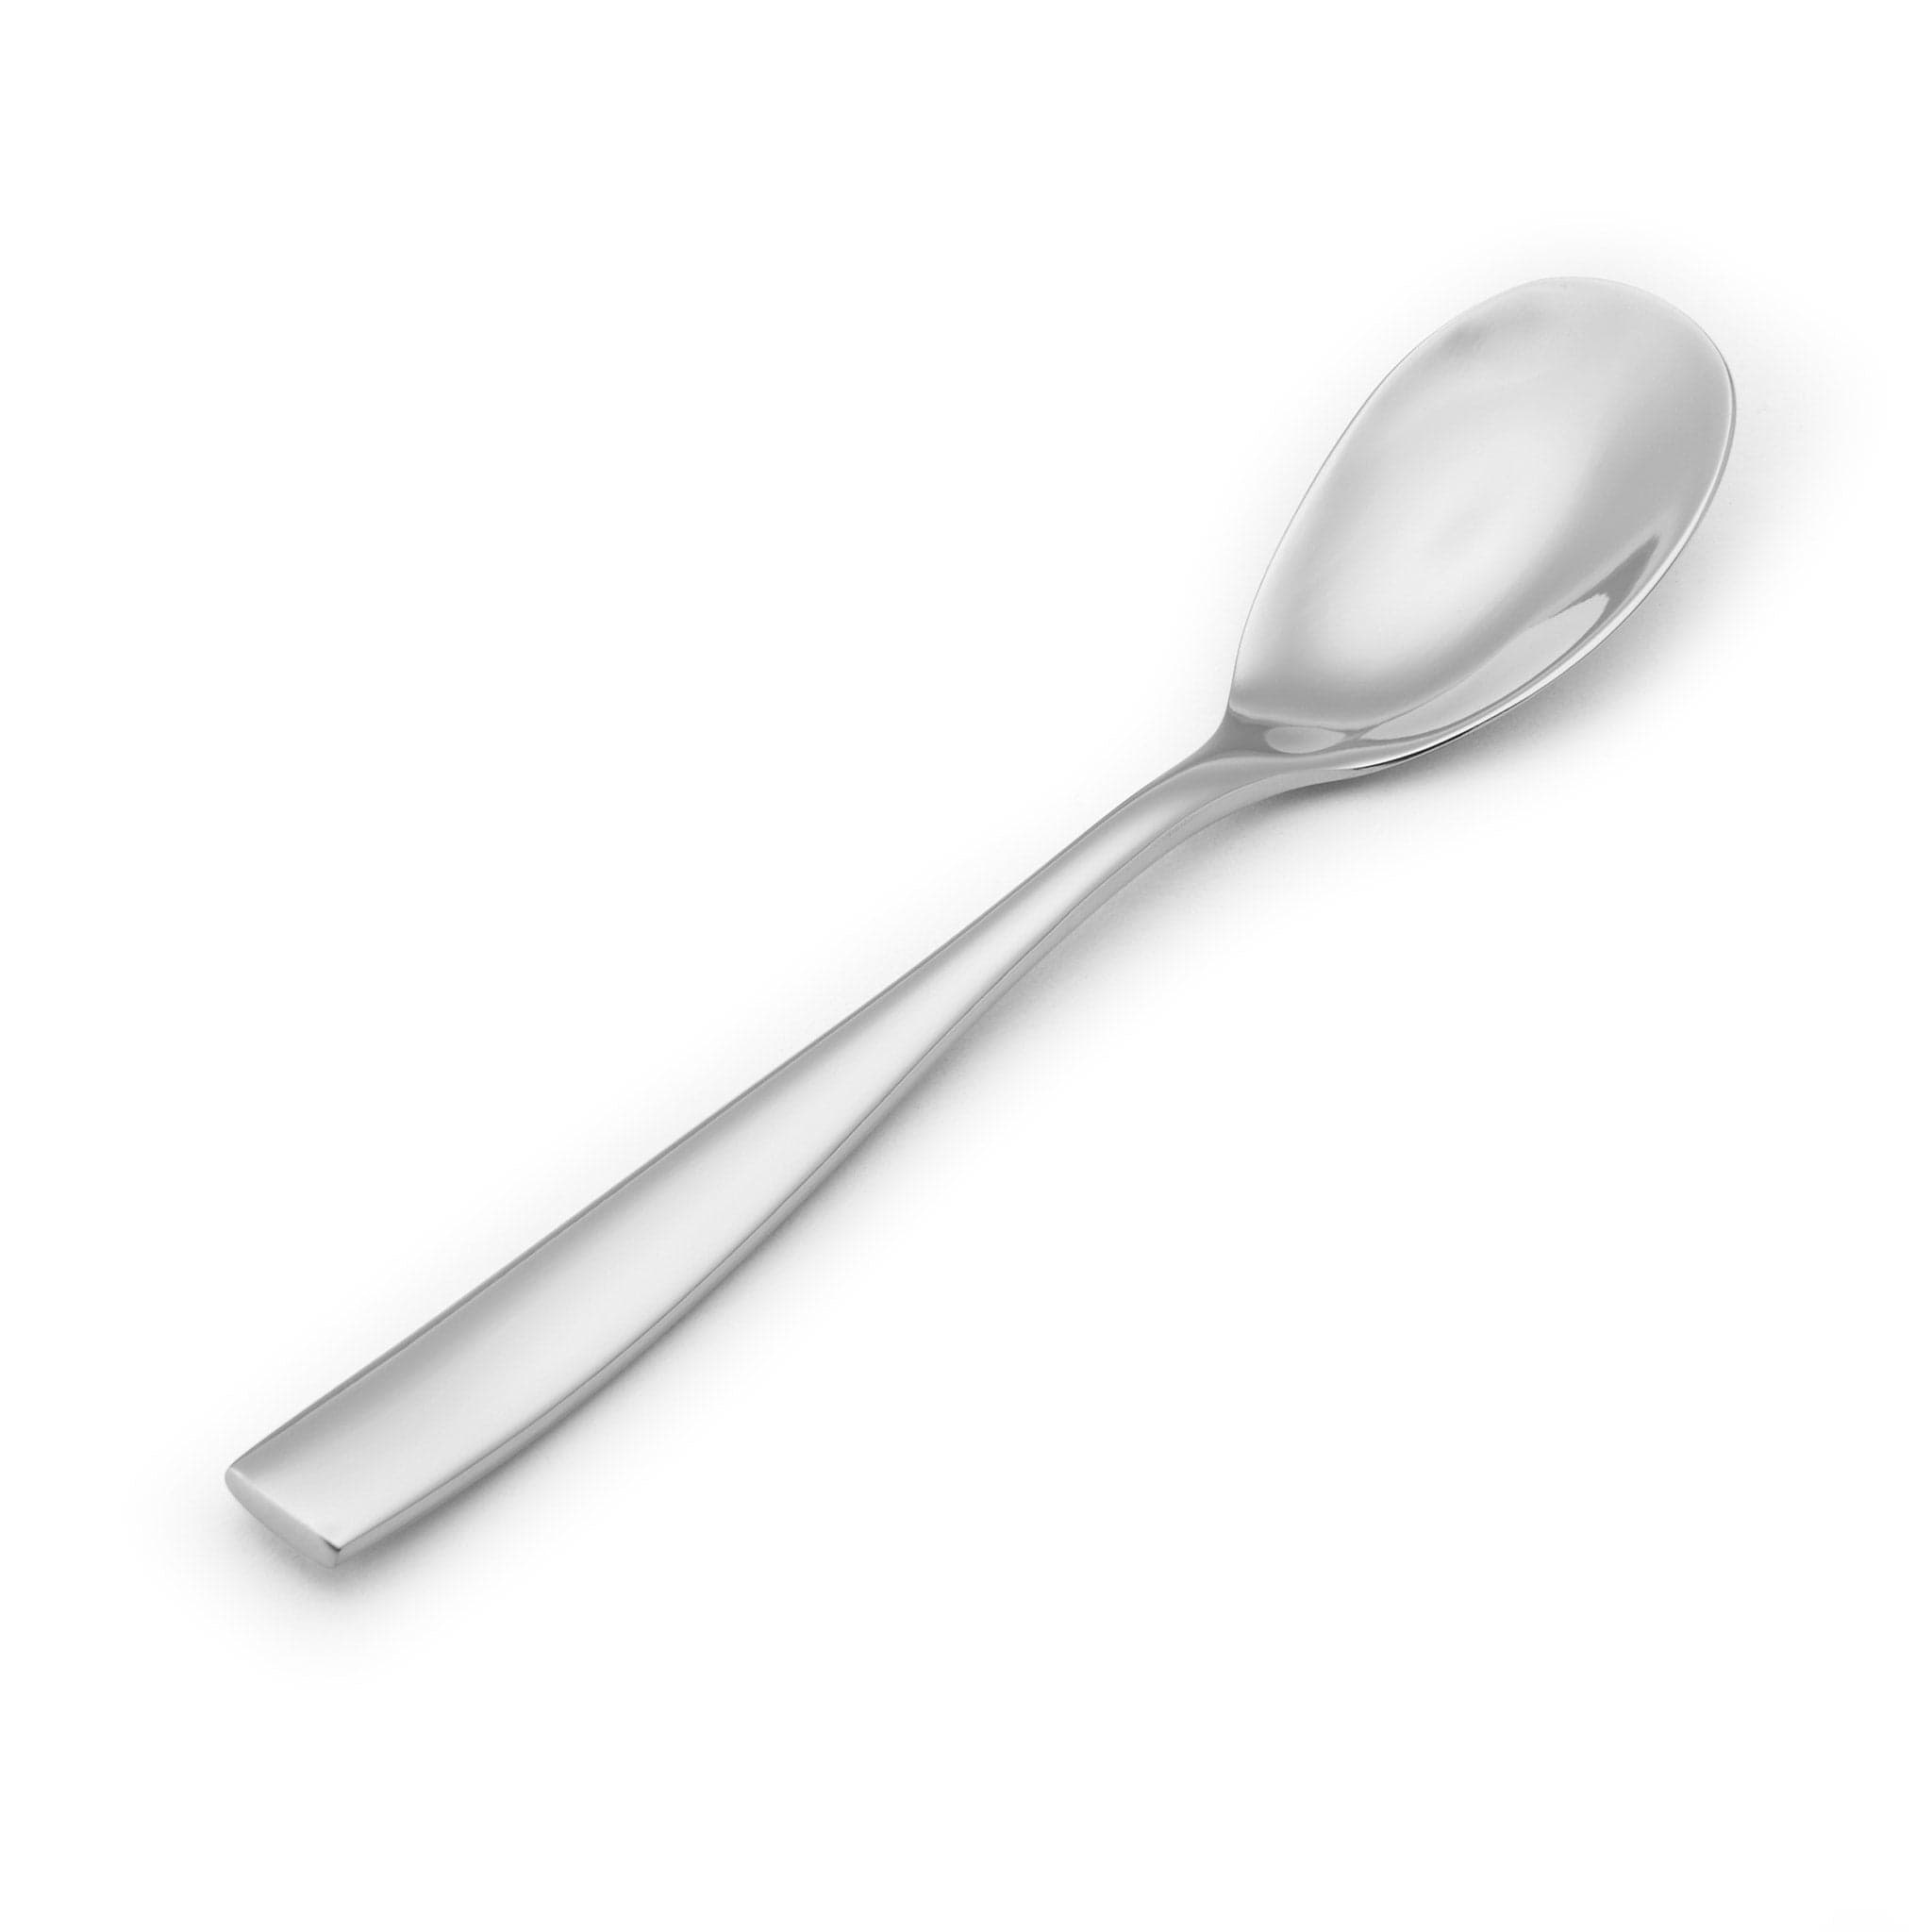 Delano 18/10 Dessert Spoon 7.8" Stainless Steel